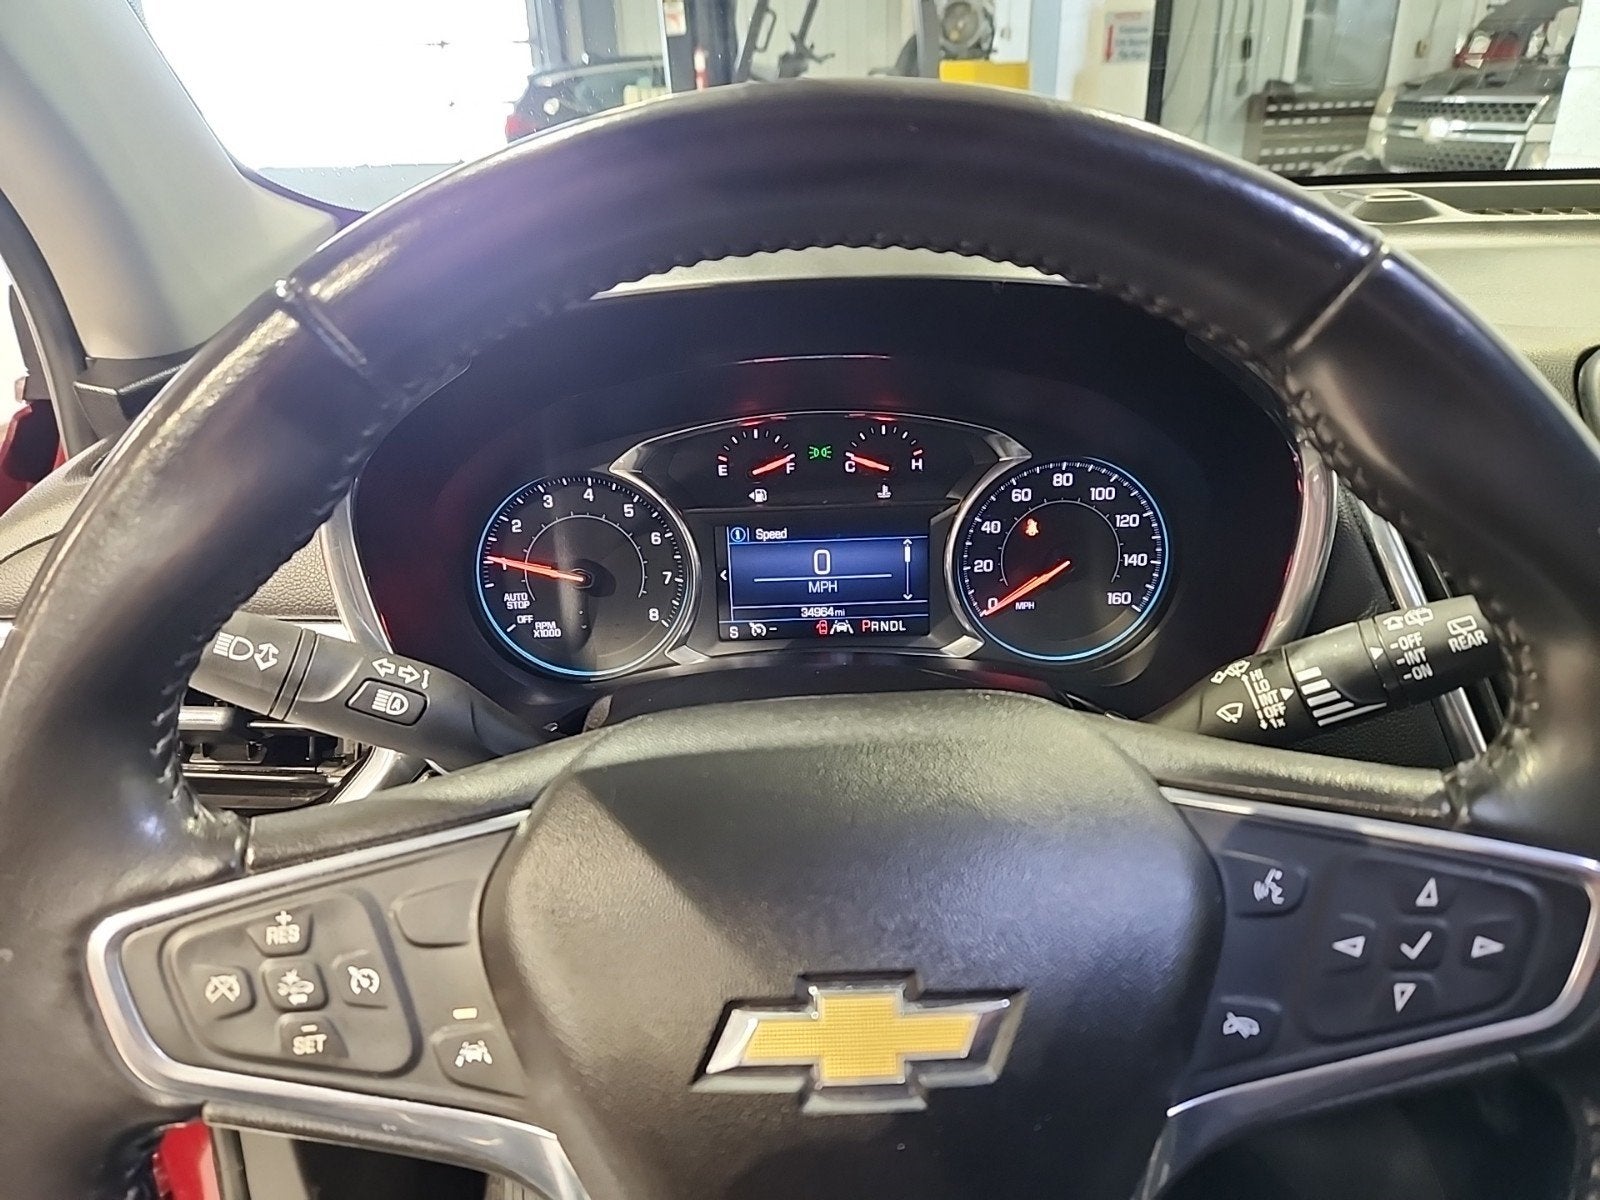 2020 Chevrolet Equinox LT